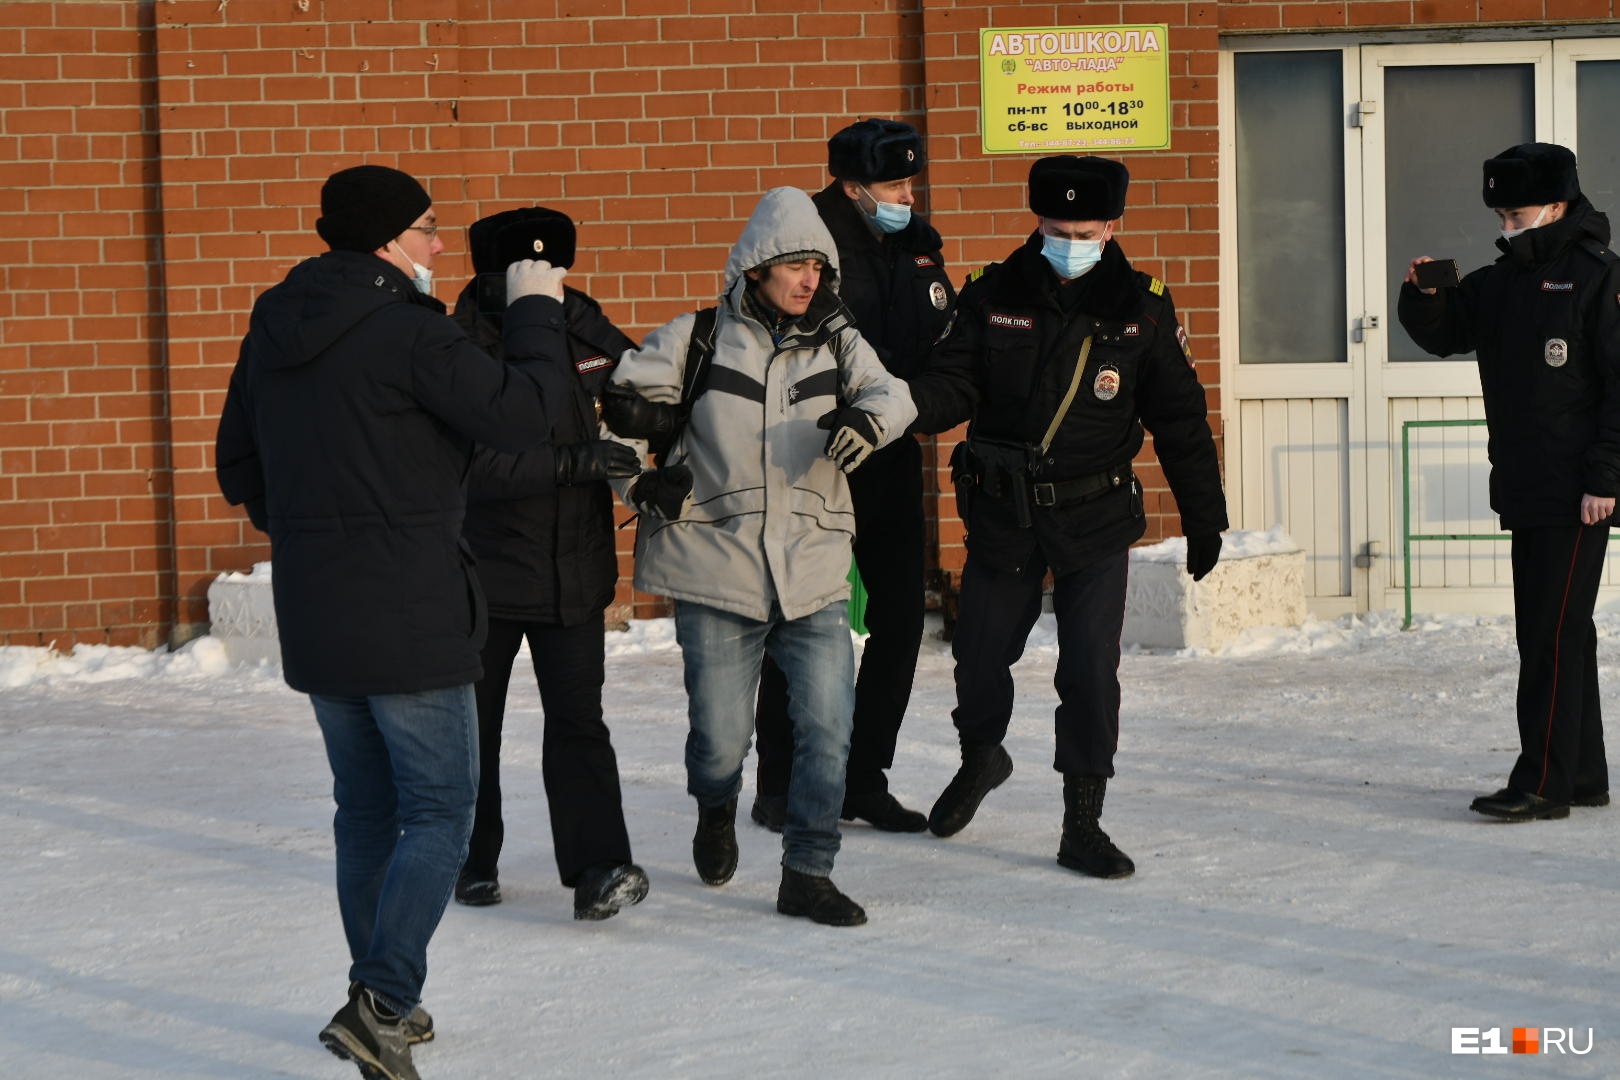 Уже во второй раз в этом месяце сотрудники полиции во время протеста <a href="https://www.e1.ru/text/incidents/2022/01/15/70378538/" class="_" target="_blank">задерживают</a> правозащитника Сергея Зыкова